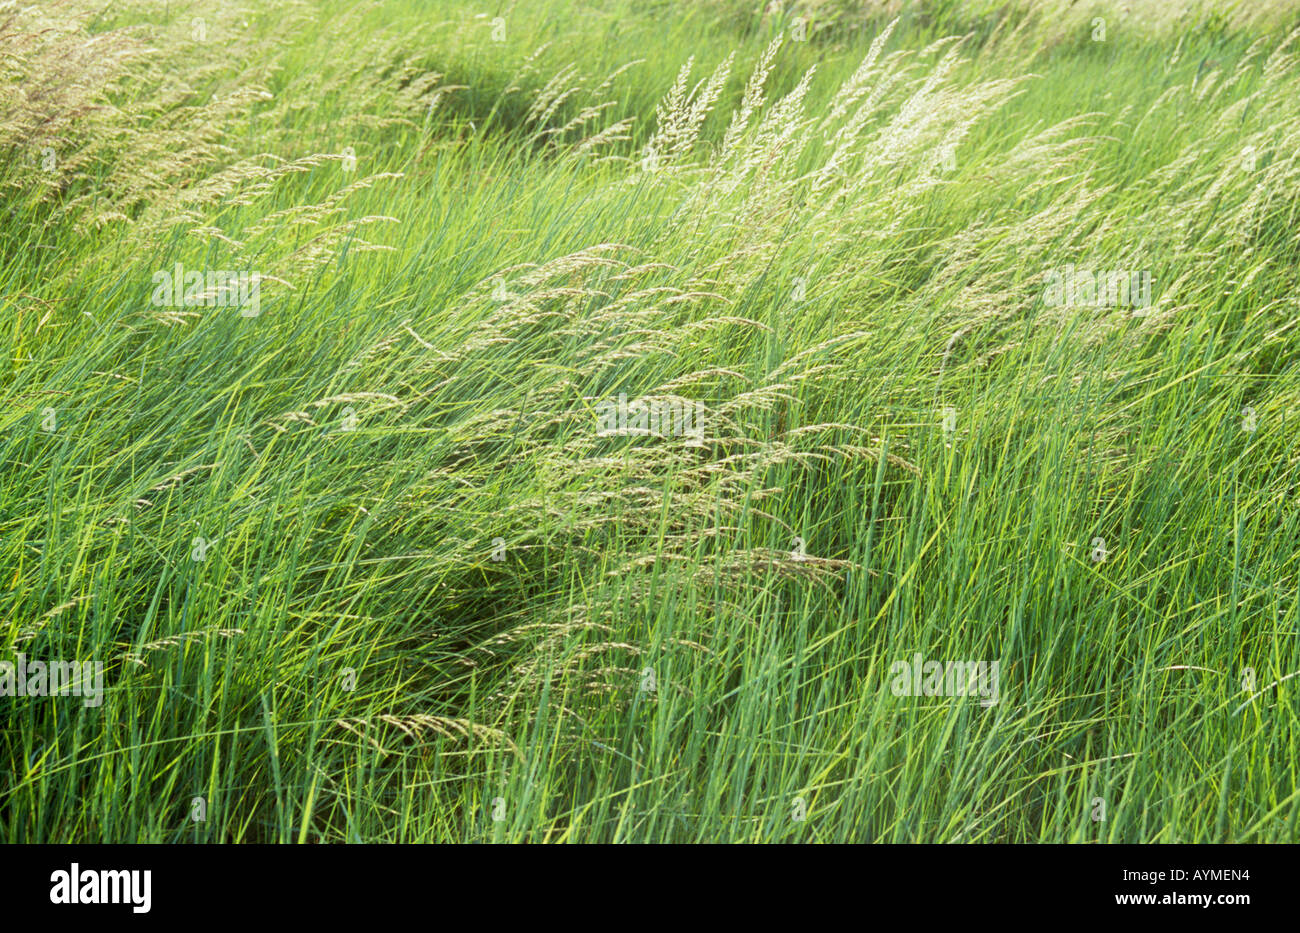 Frische blaue grobe Wiese Rasen oder Poa Trivialis winken in die Brise in einem Feld oder Wiese Stockfoto